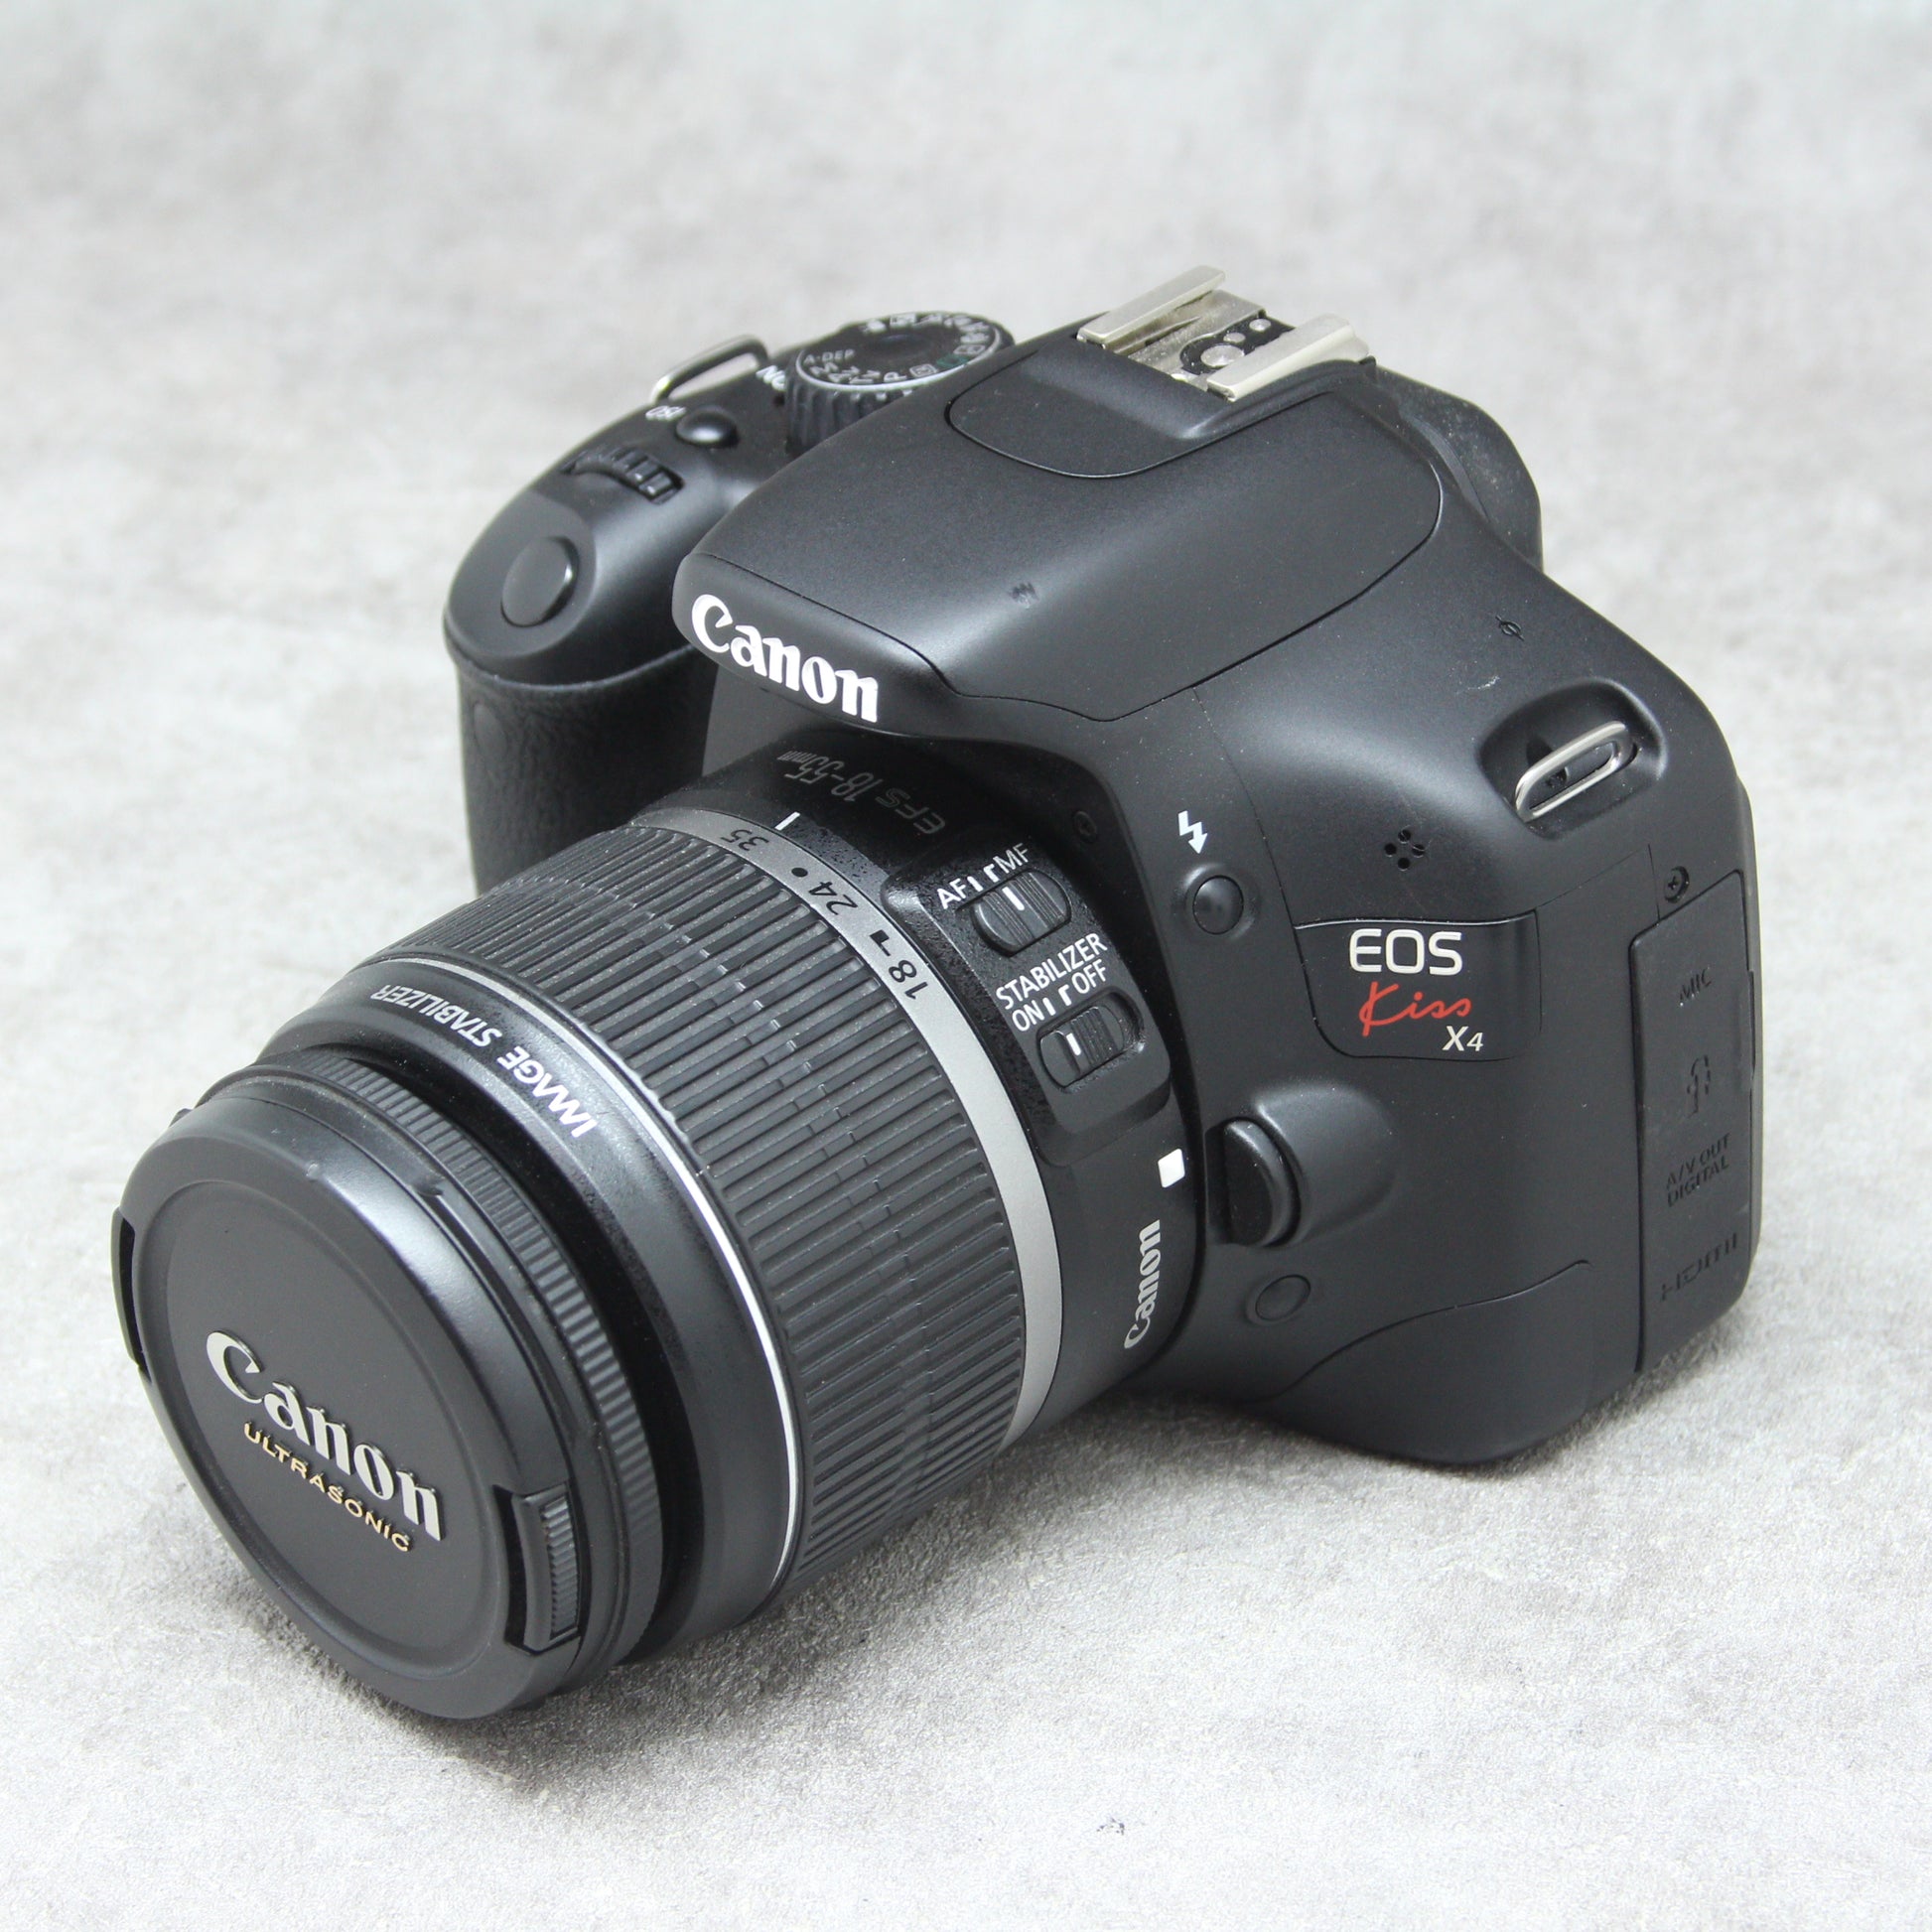 デジタル一眼Canon FOS kiss x4